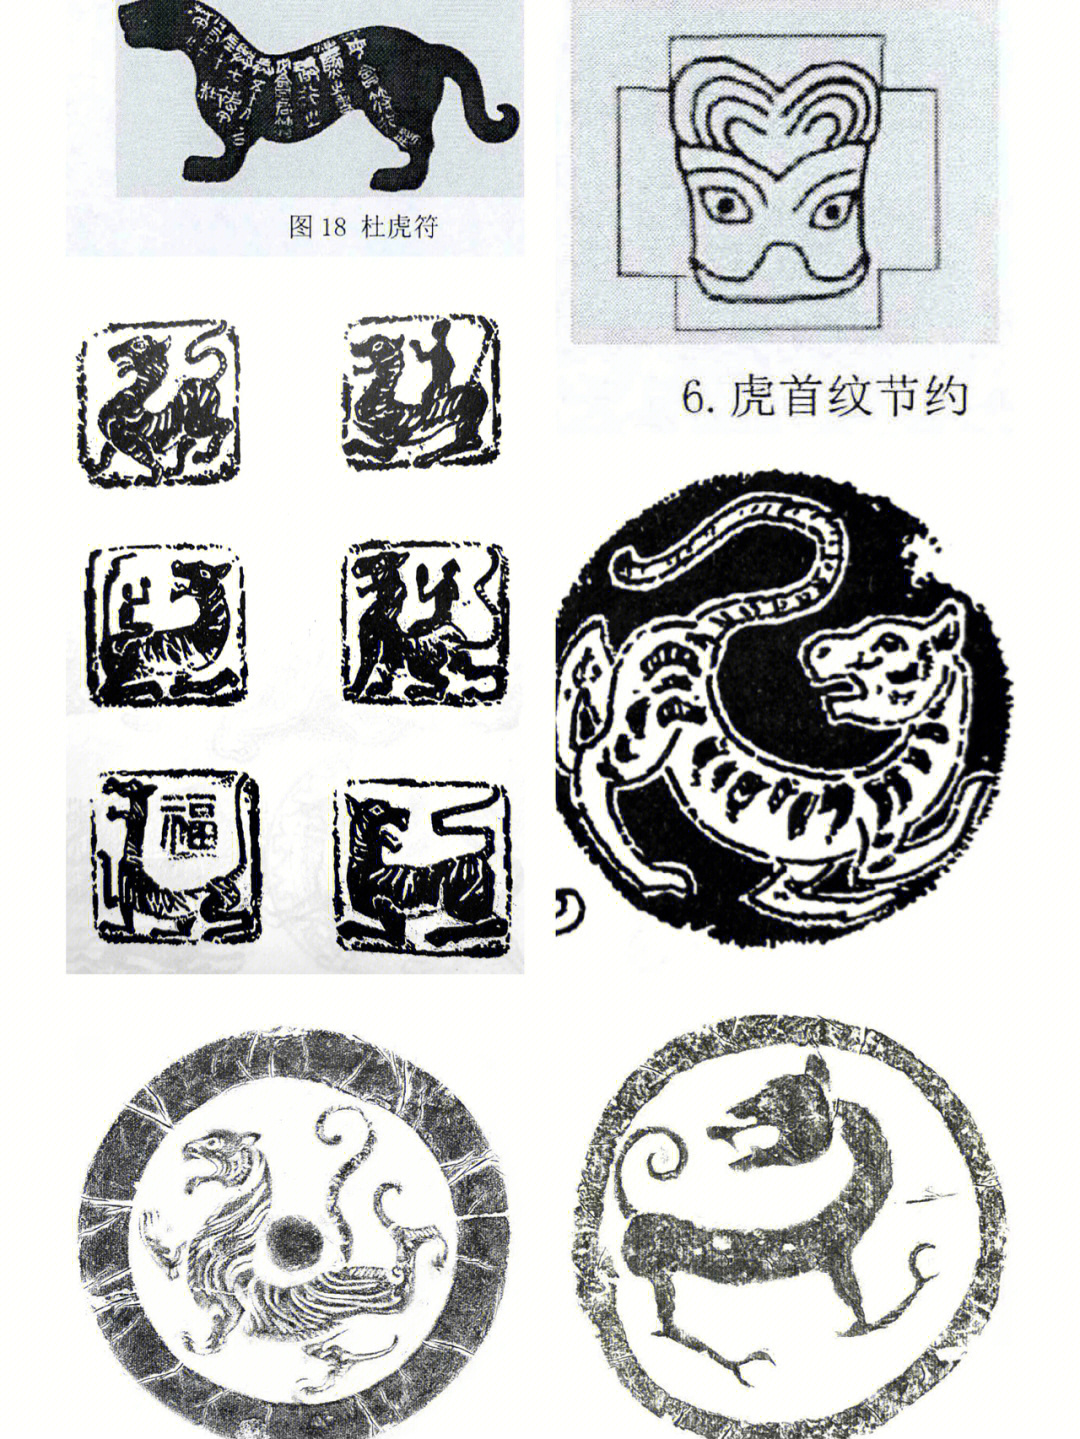 中国传统纹样12虎纹